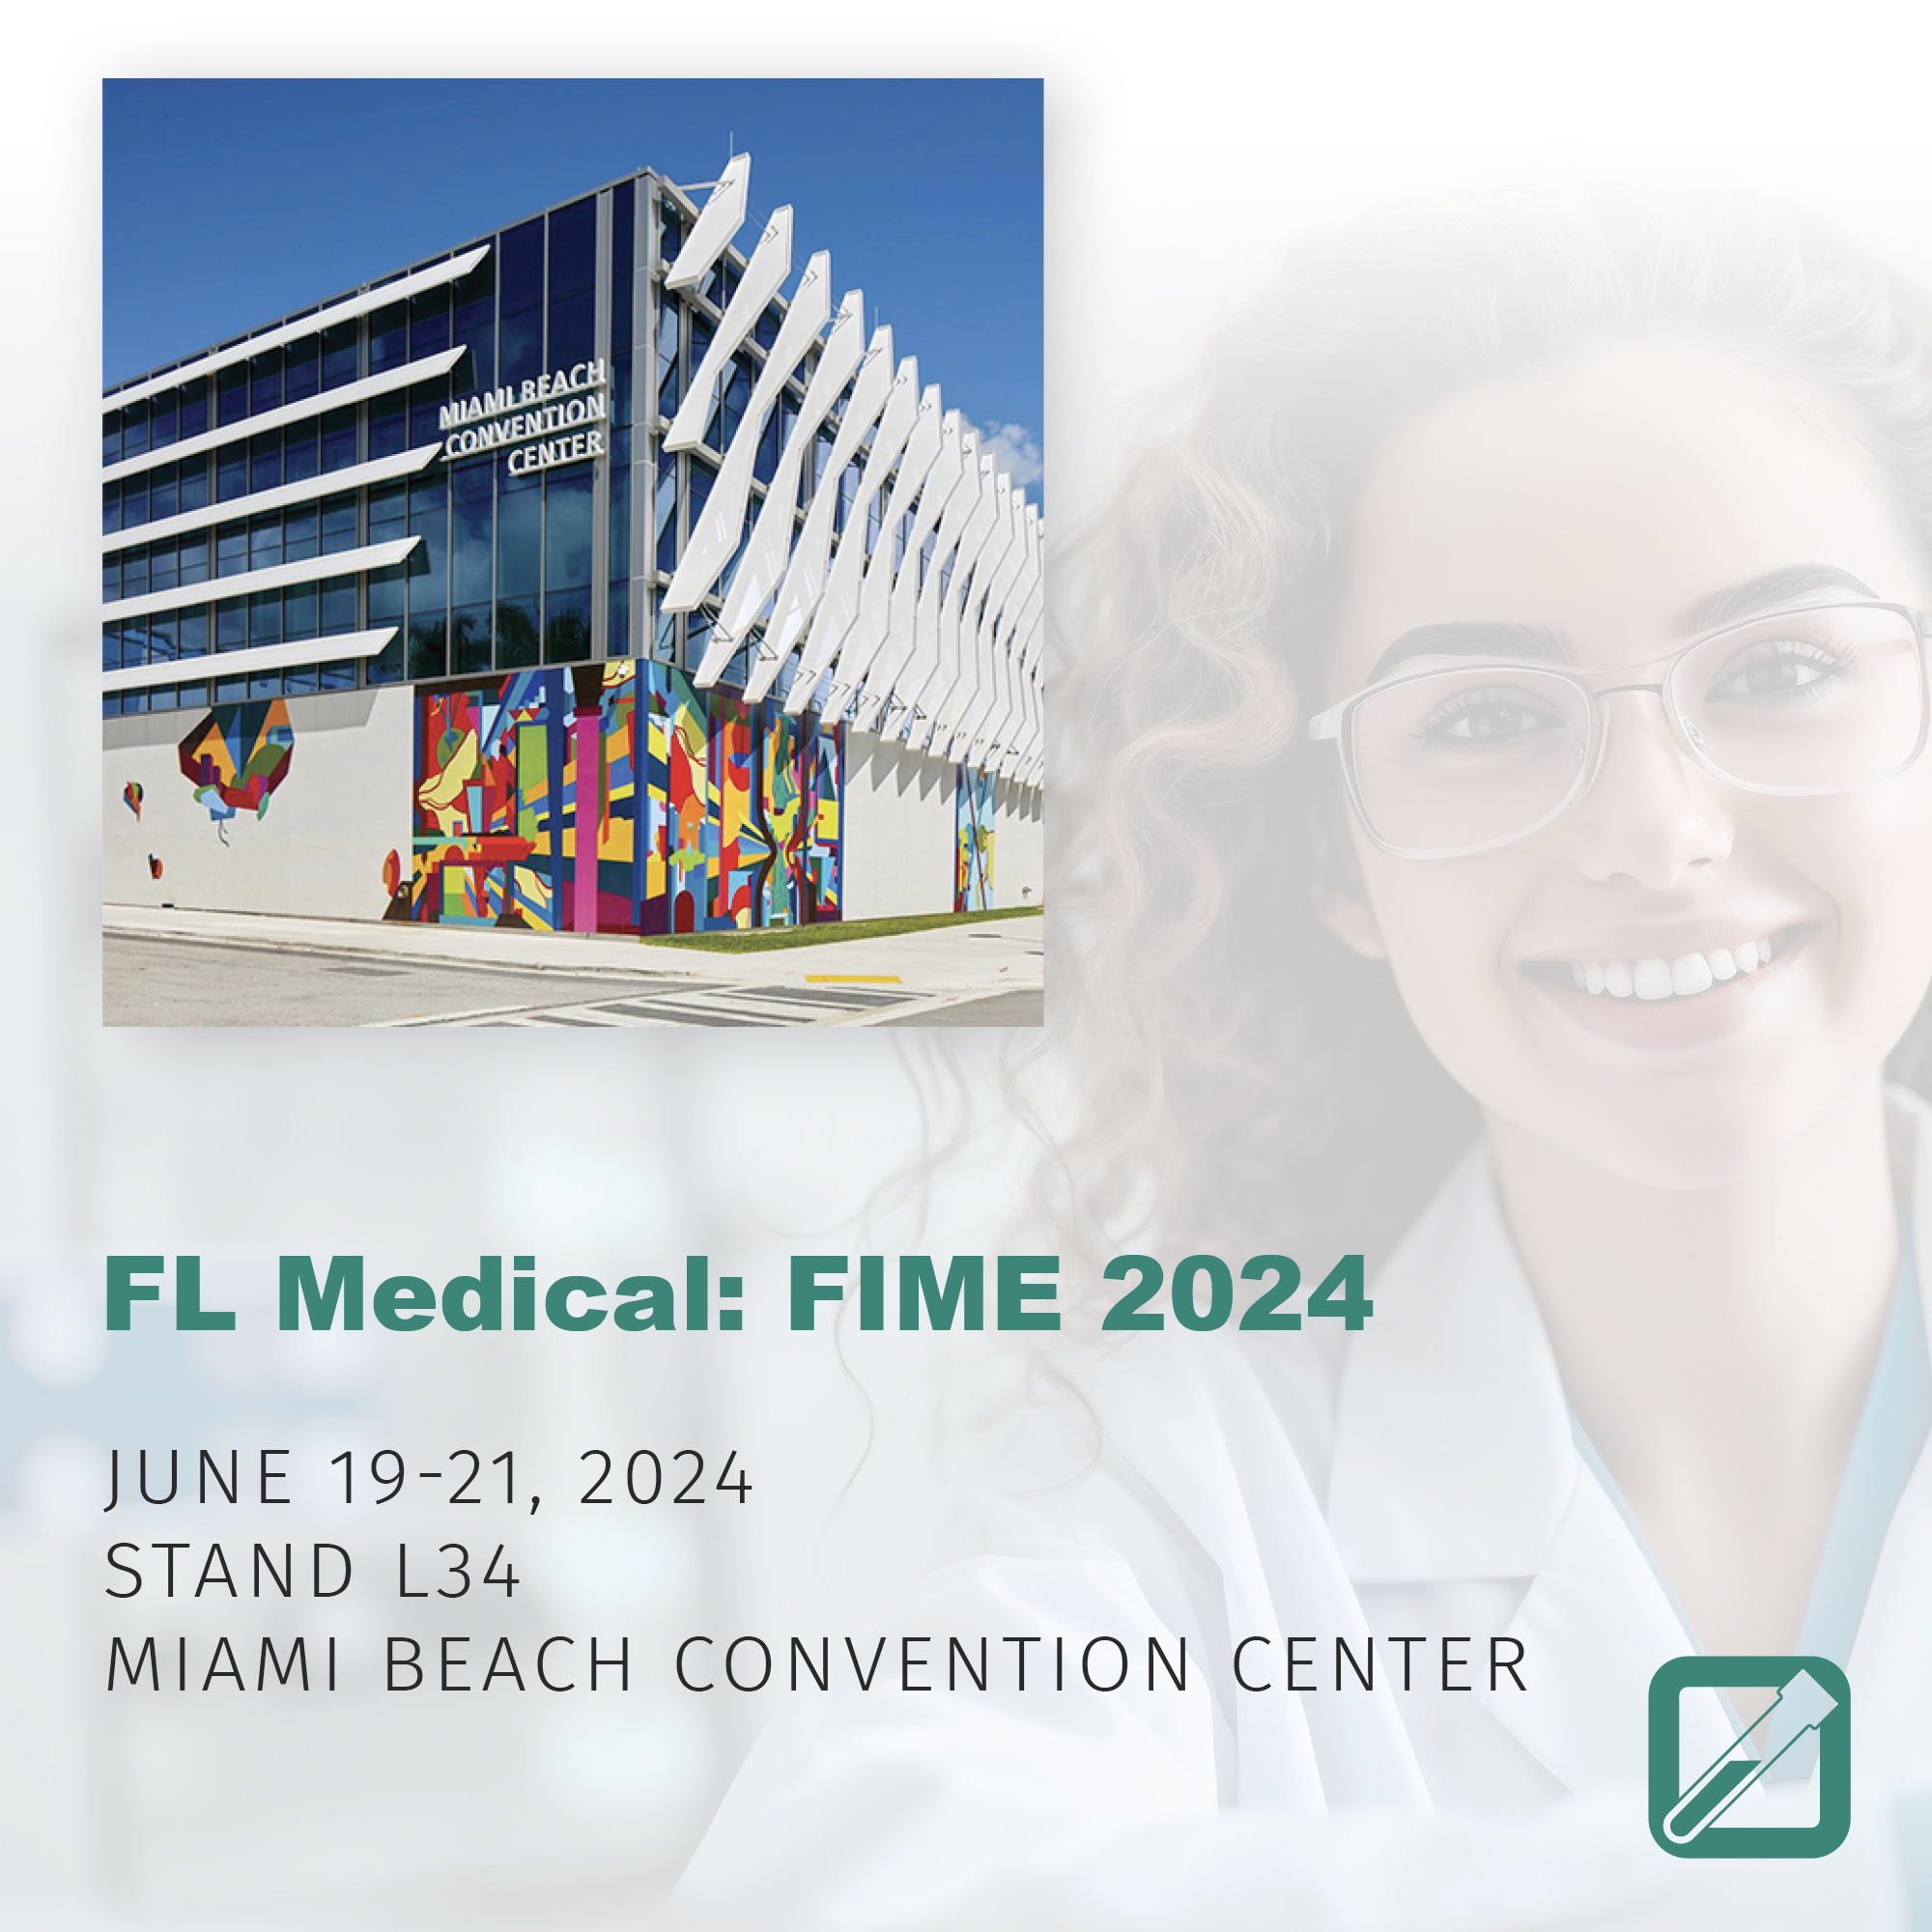 FL Medical 2024: FIME 2024